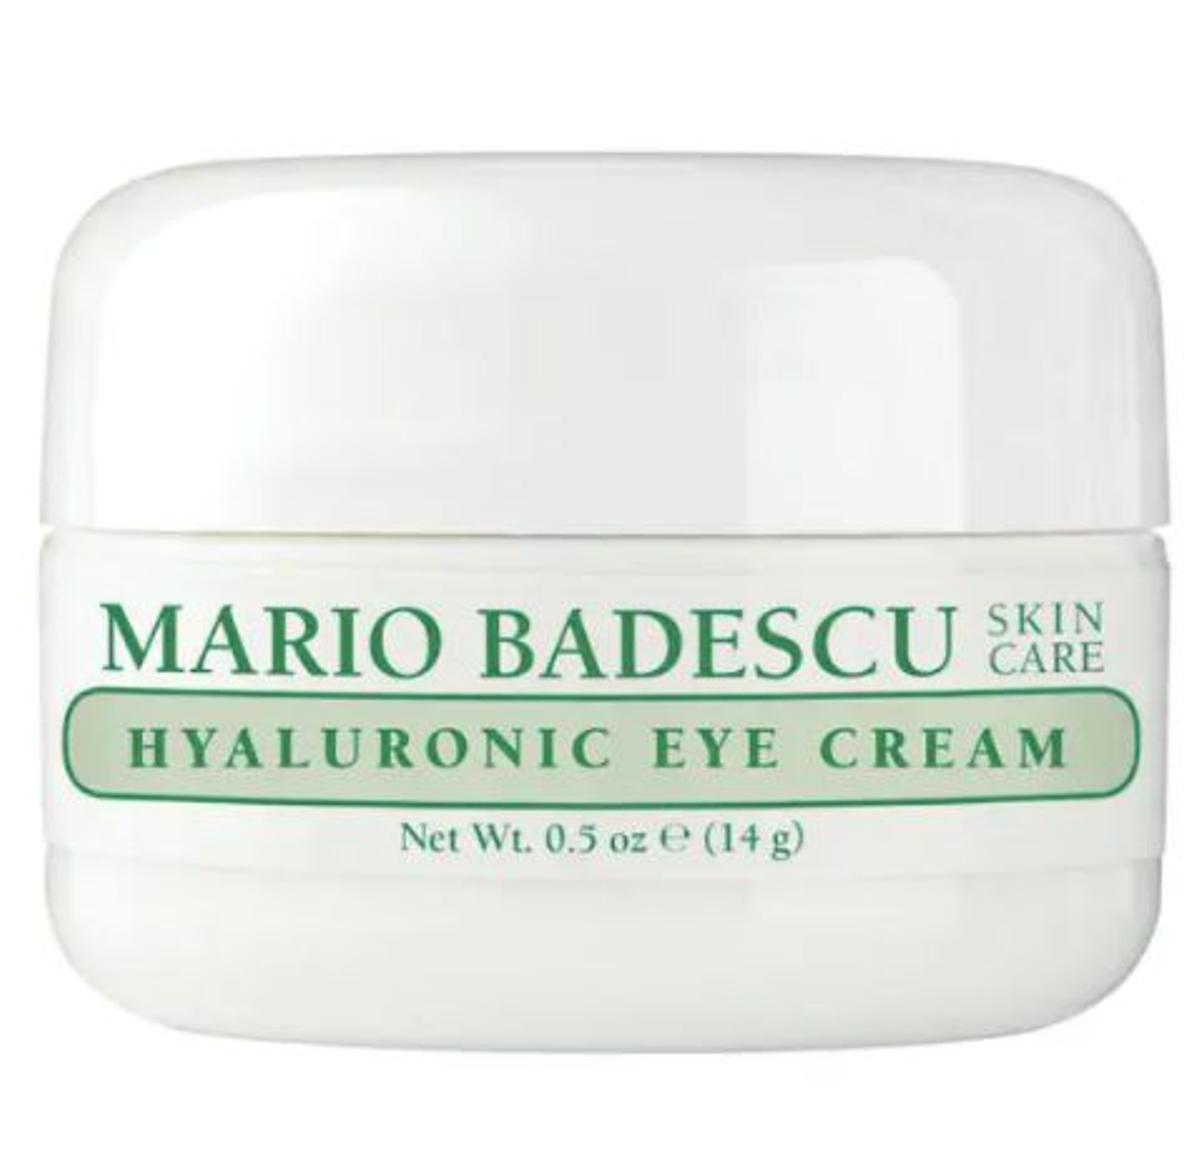 Crema para el contorno de ojos con ácido hialurónico de Mario Badescu